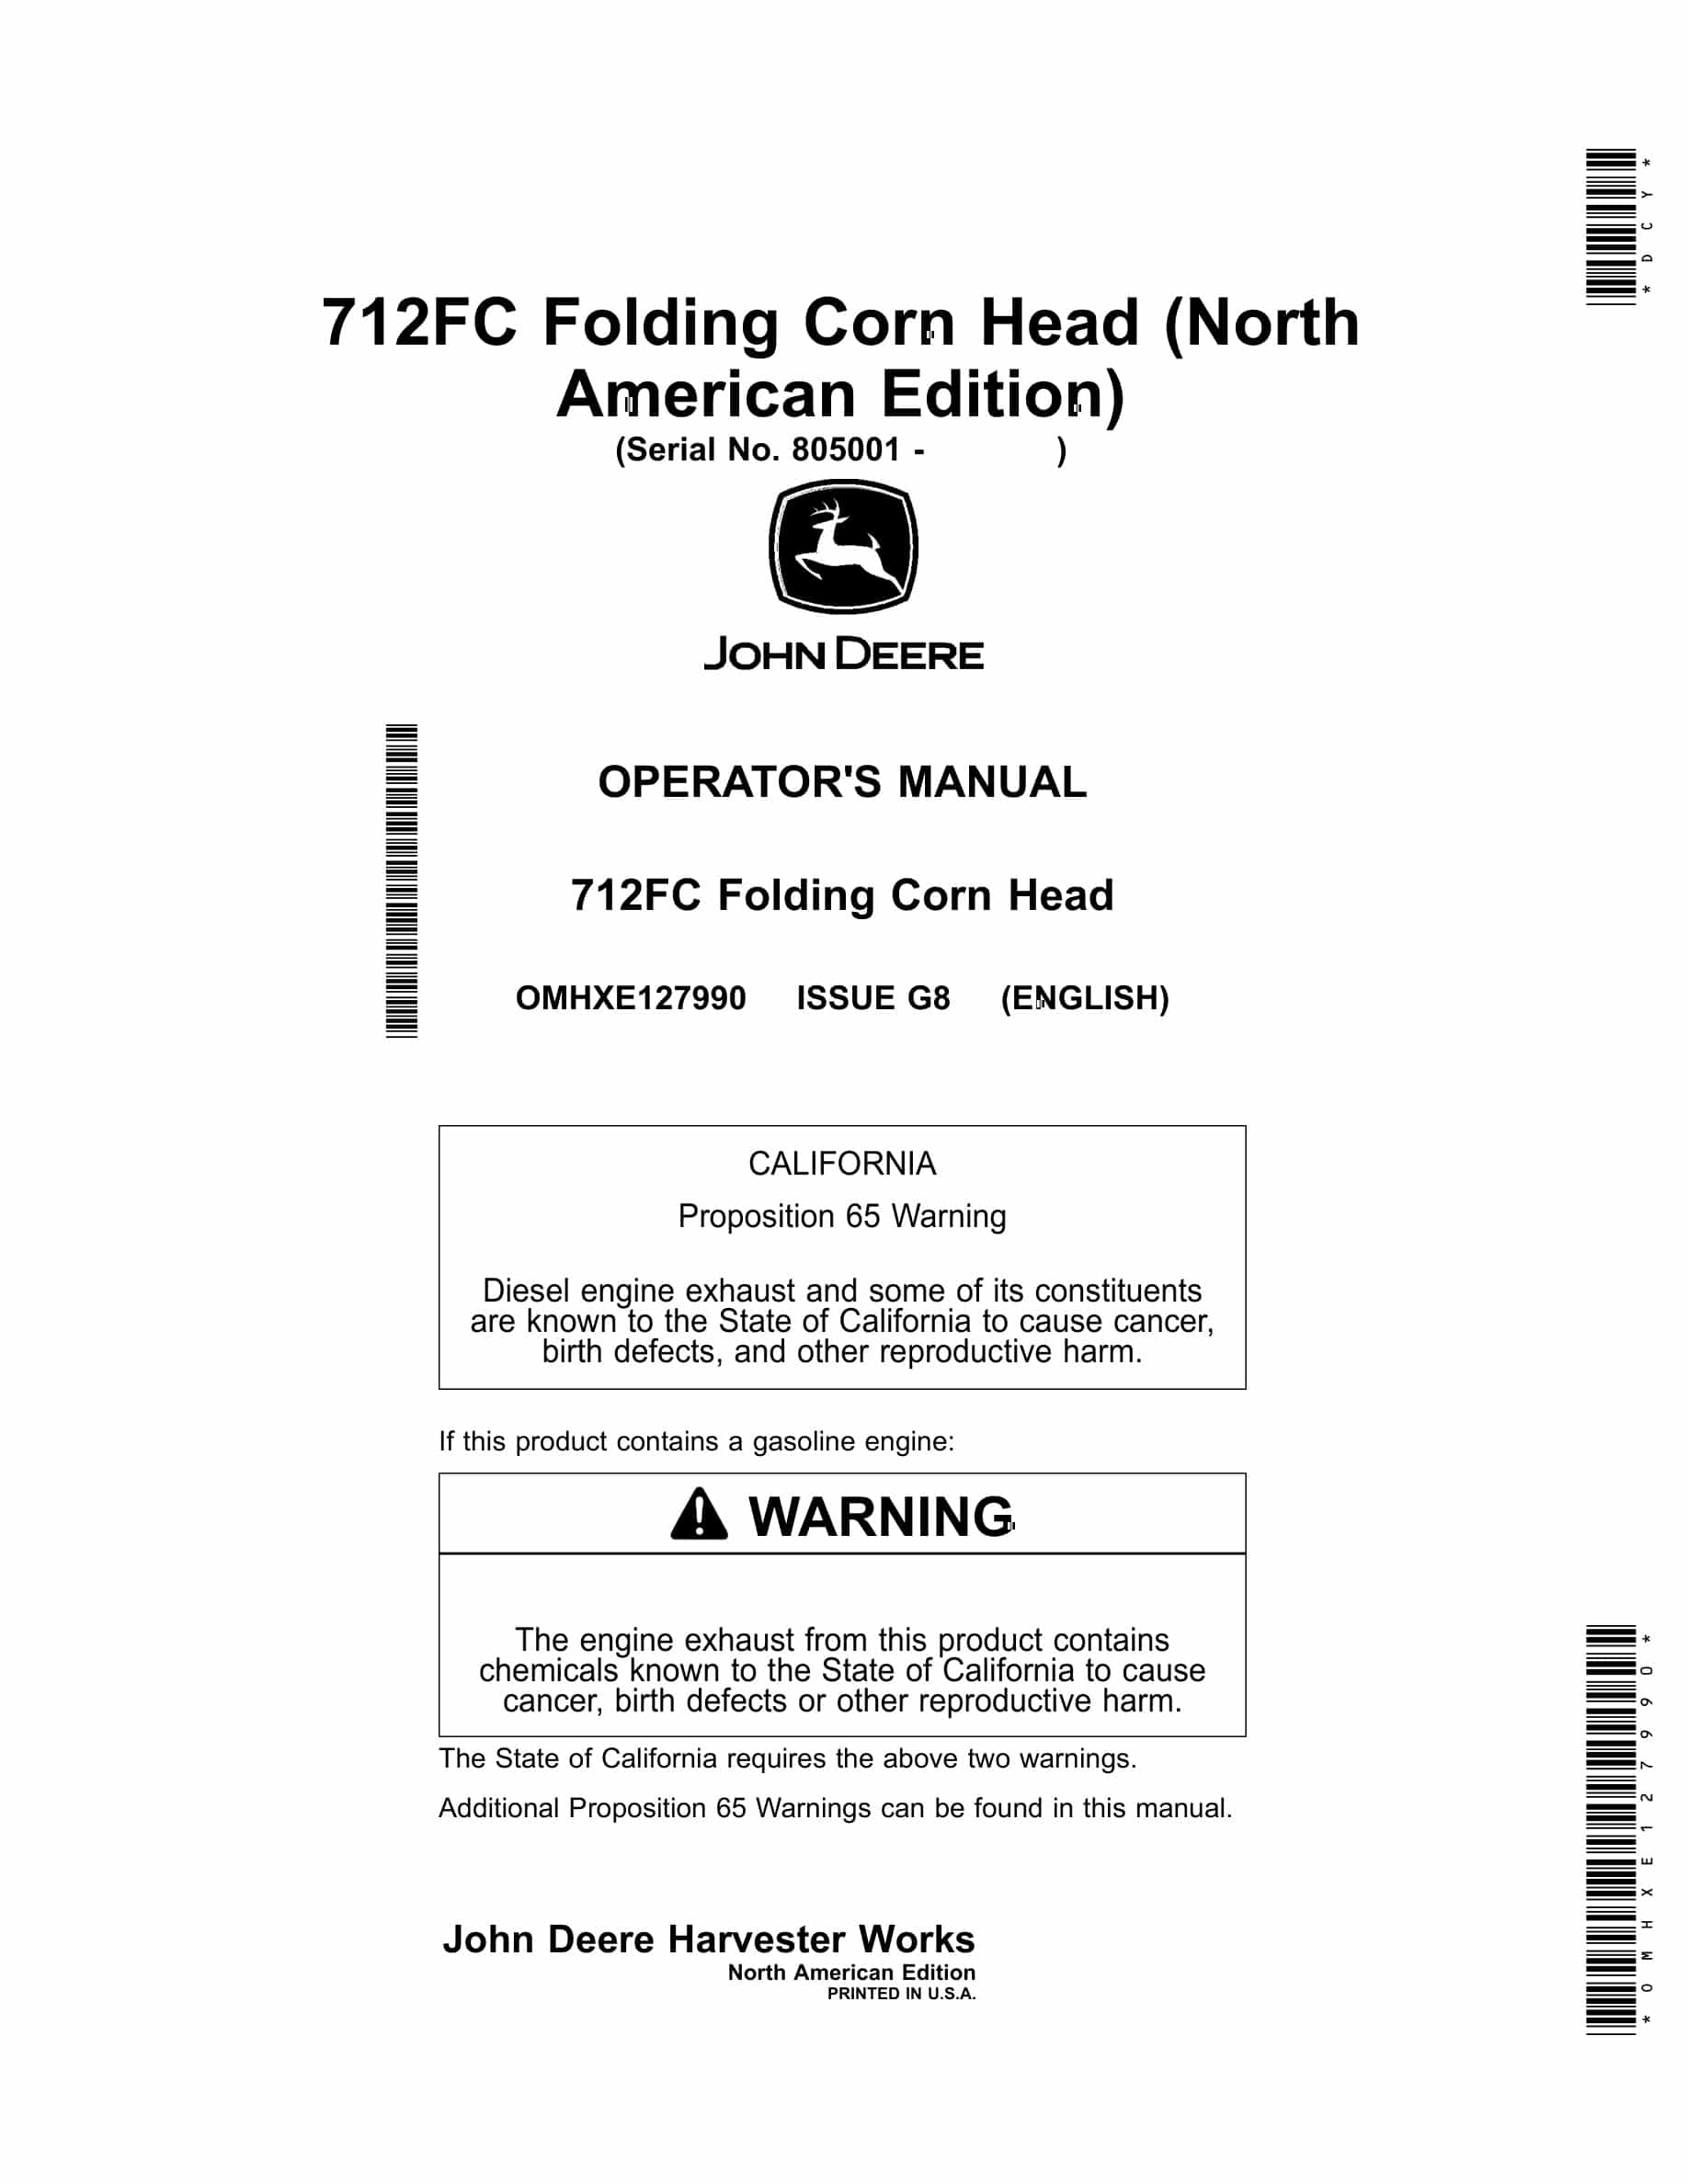 John Deere 712FC Folding Corn Head Operator Manual OMHXE127990-1